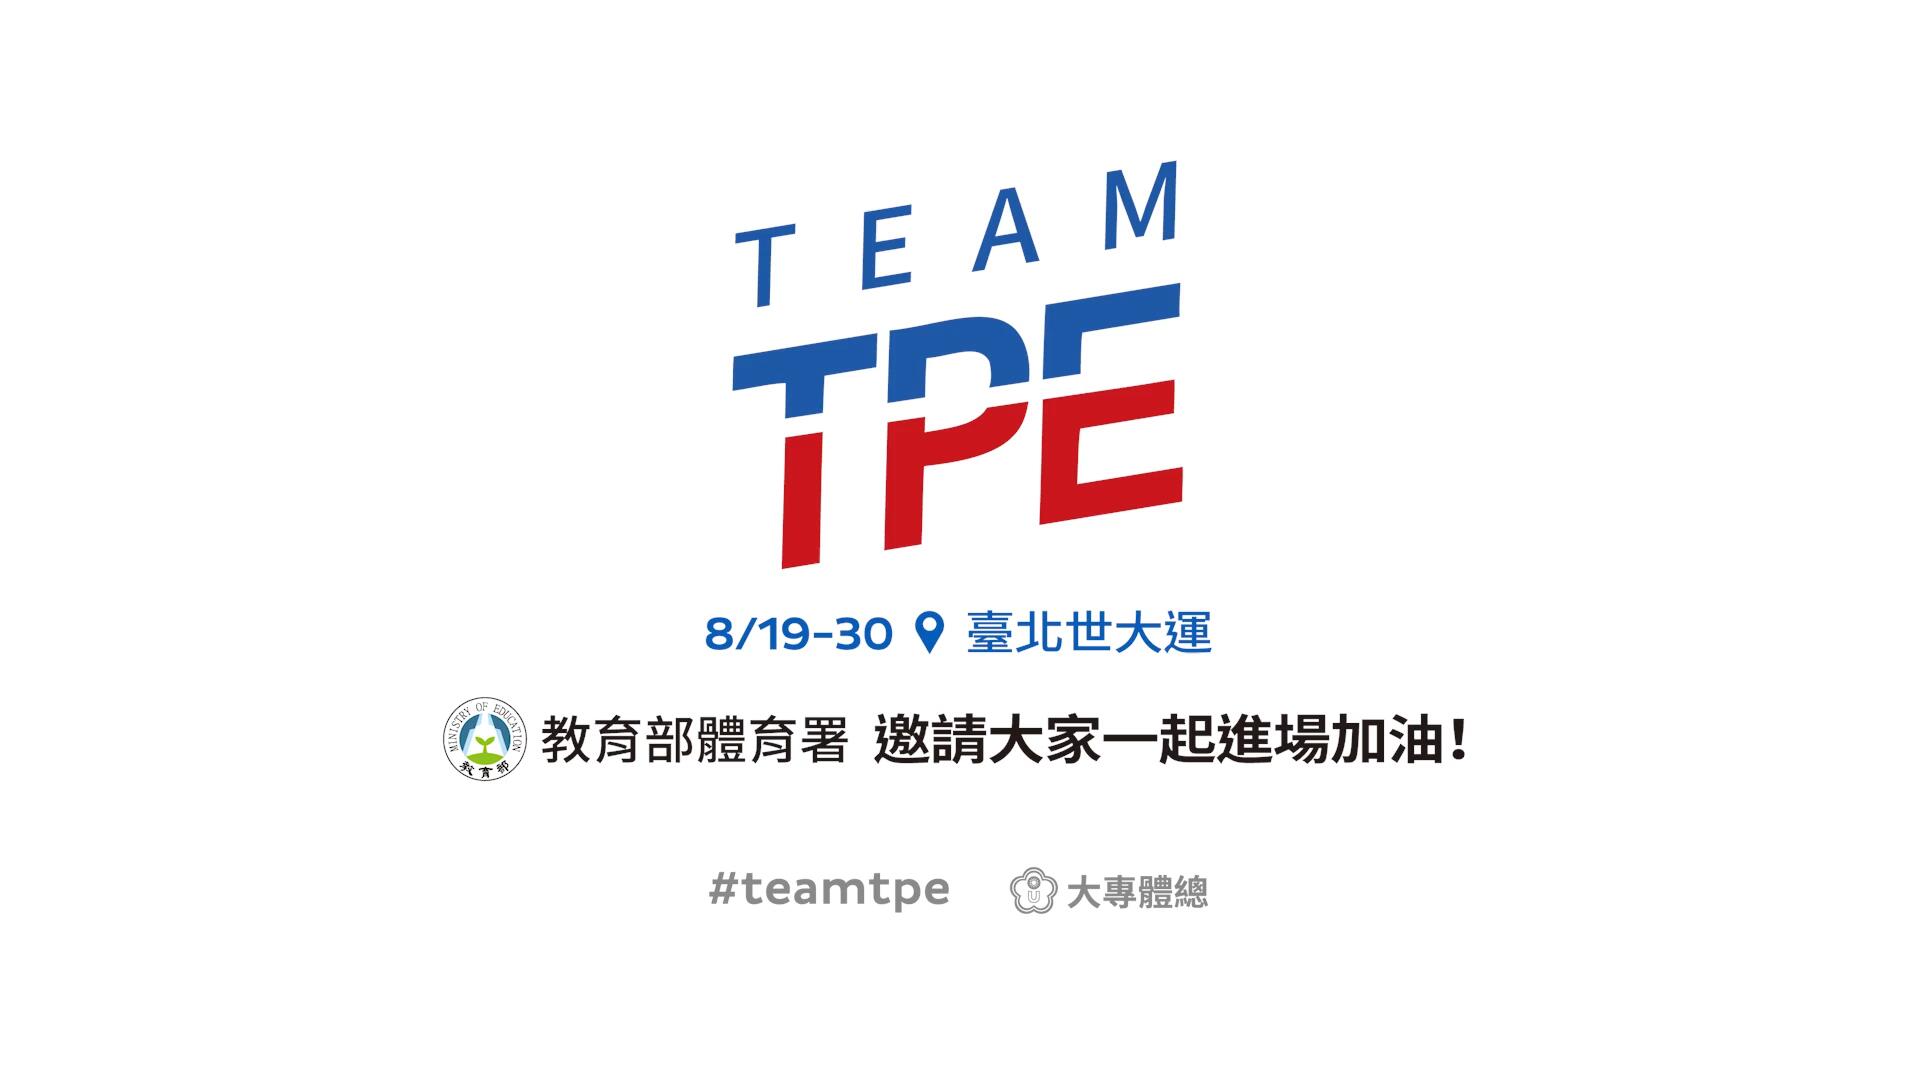 【台湾】世大达中华队宣传片《TEAM UP》